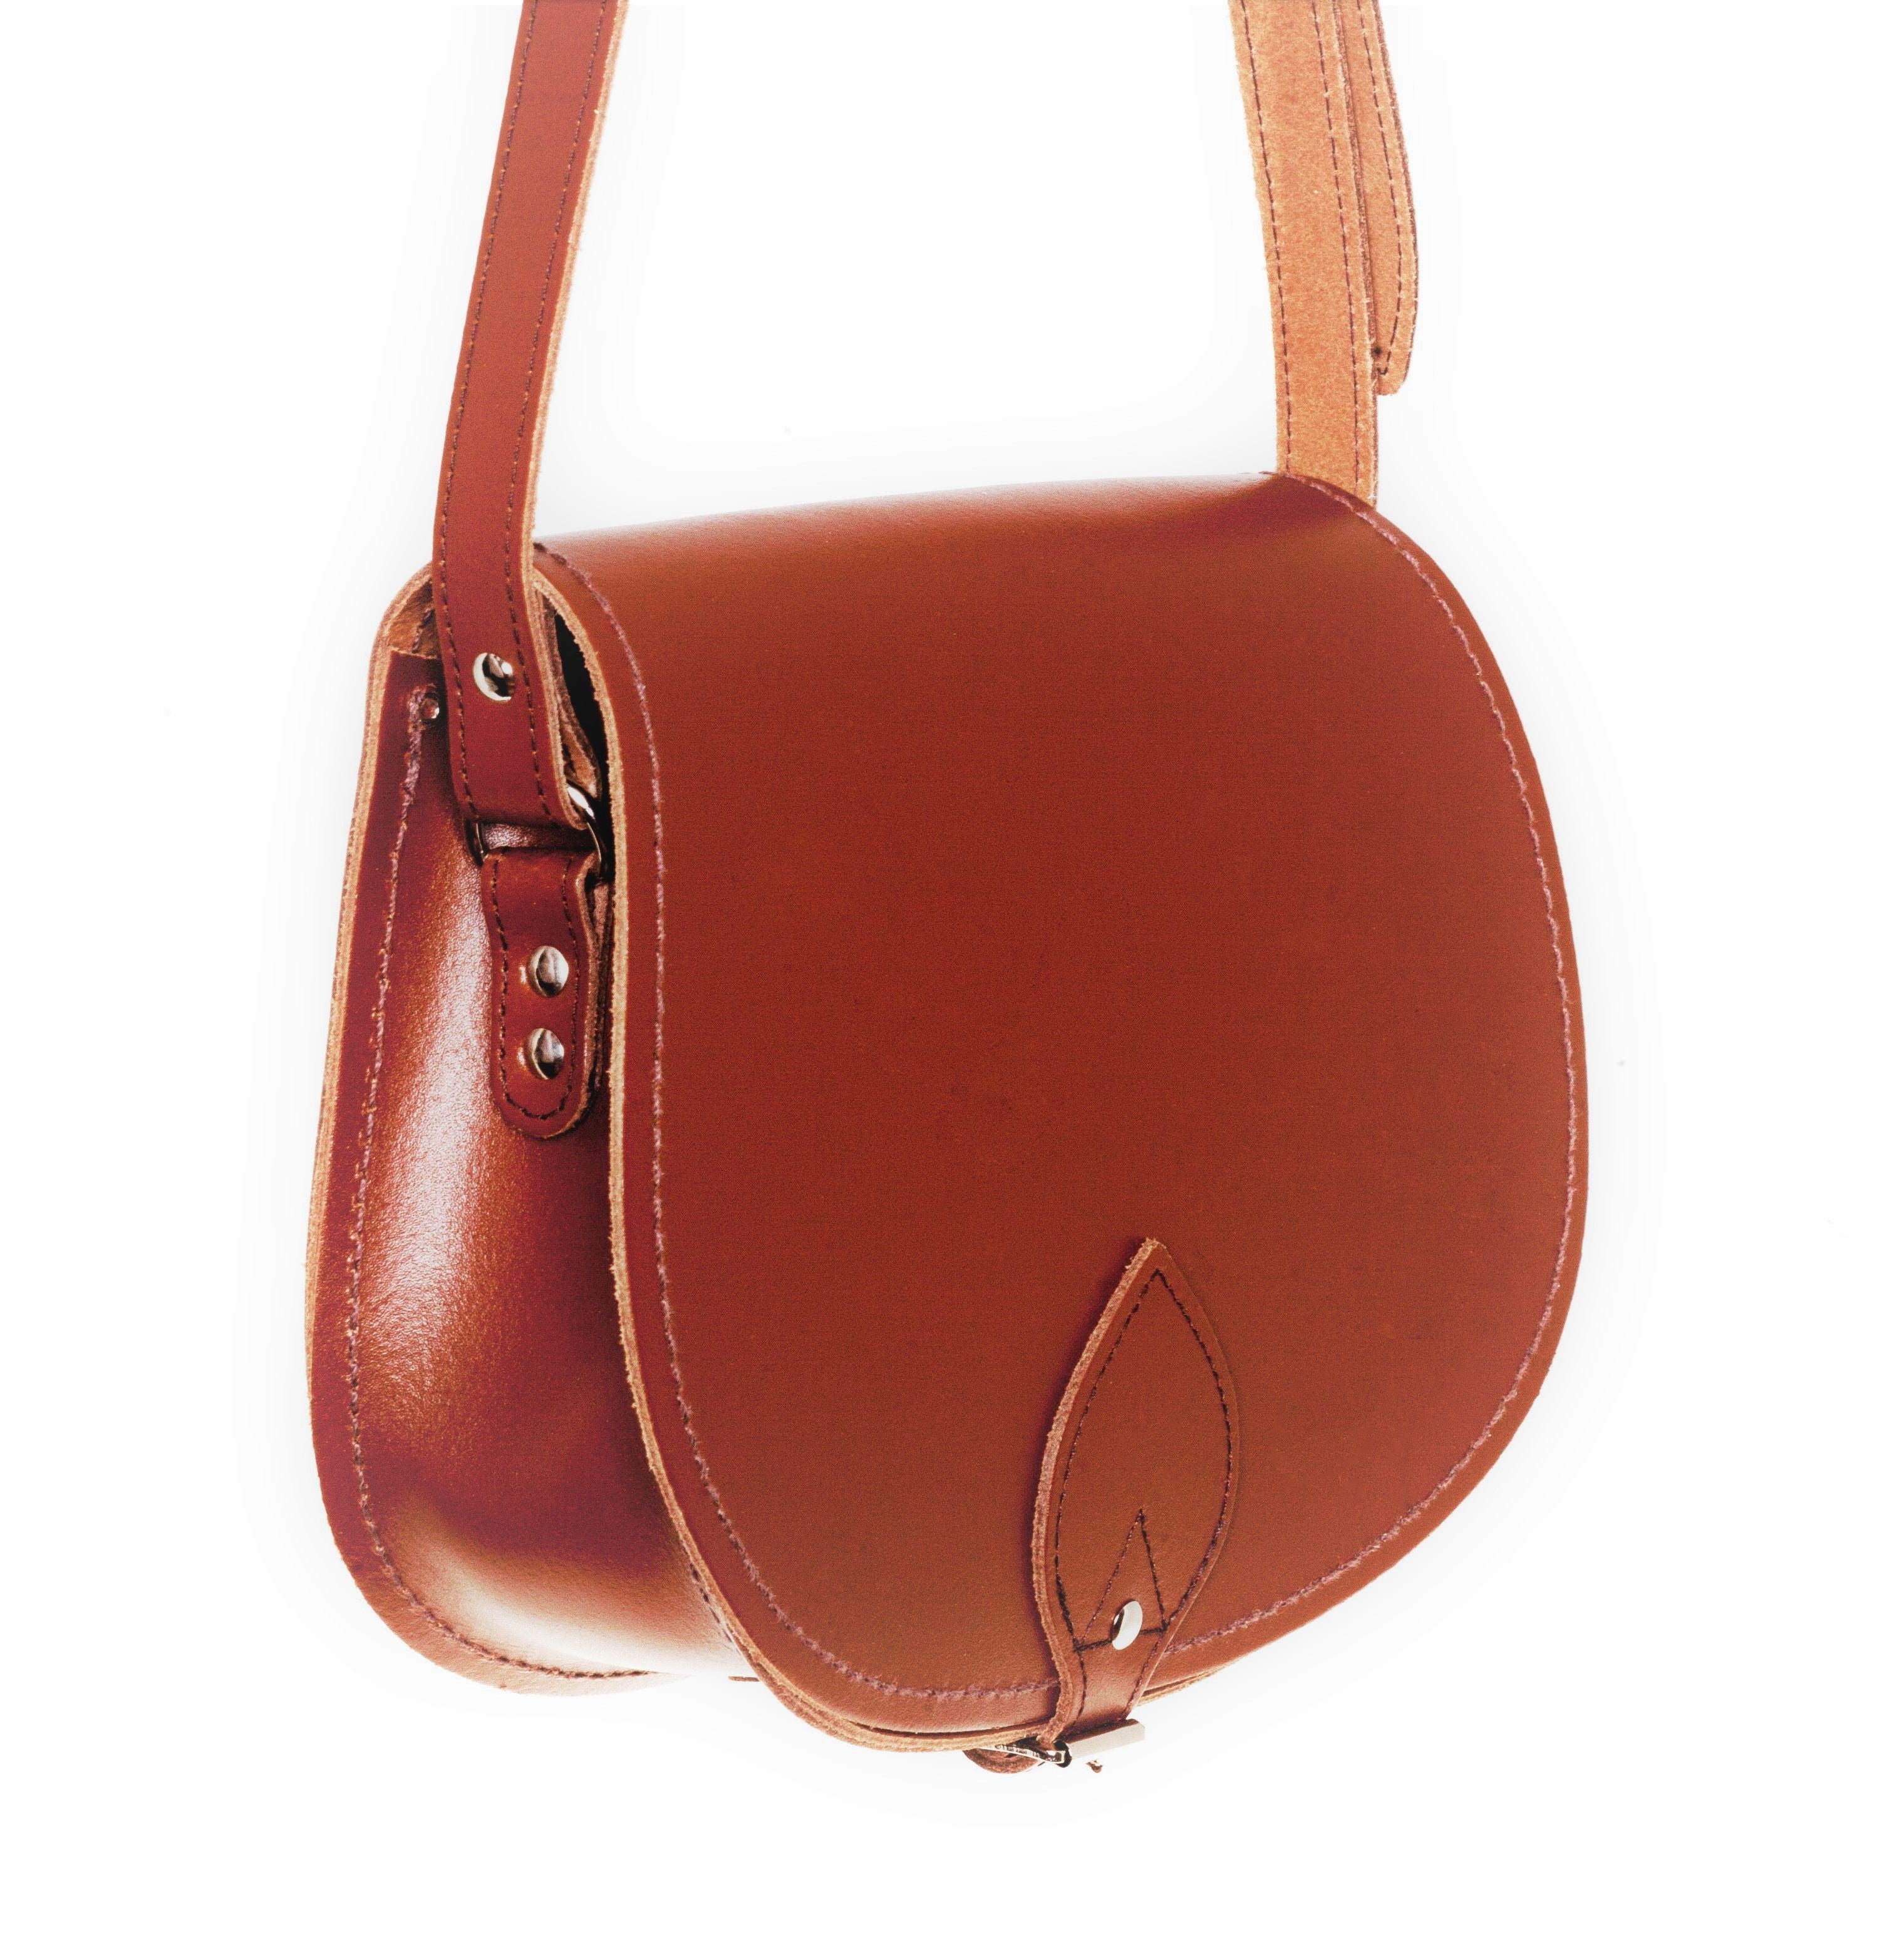 Zatchels Chestnut Handmade Leather Saddle Bag 2 Sizes